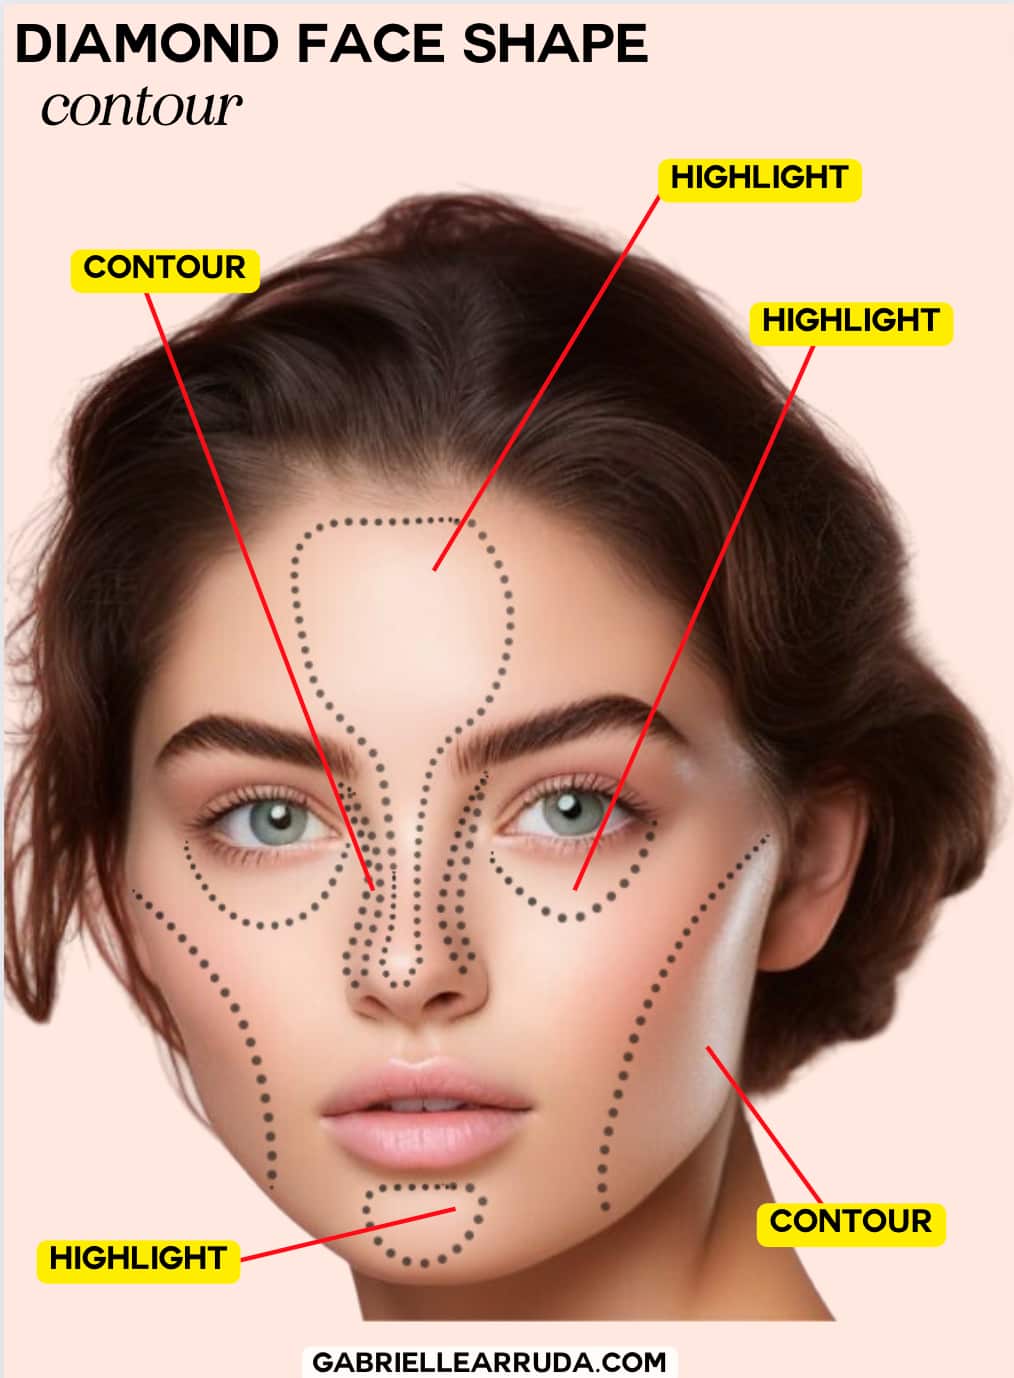 diamond face shape contour